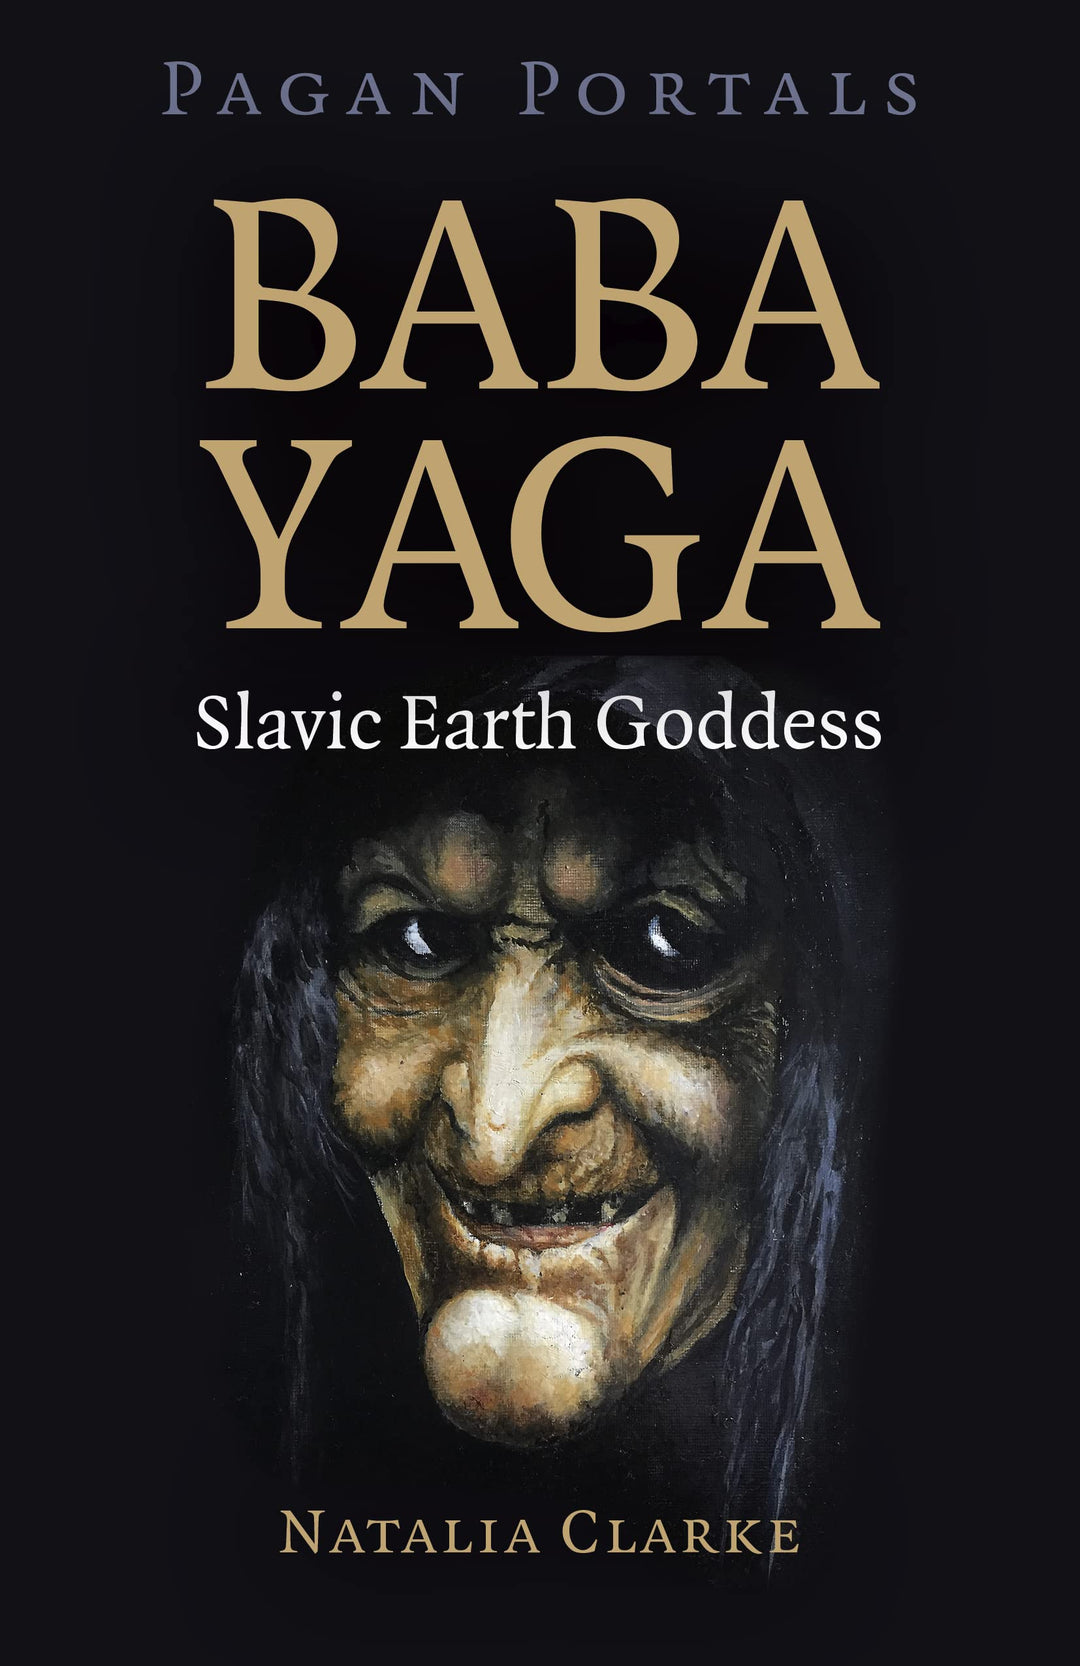 Baba Yaga